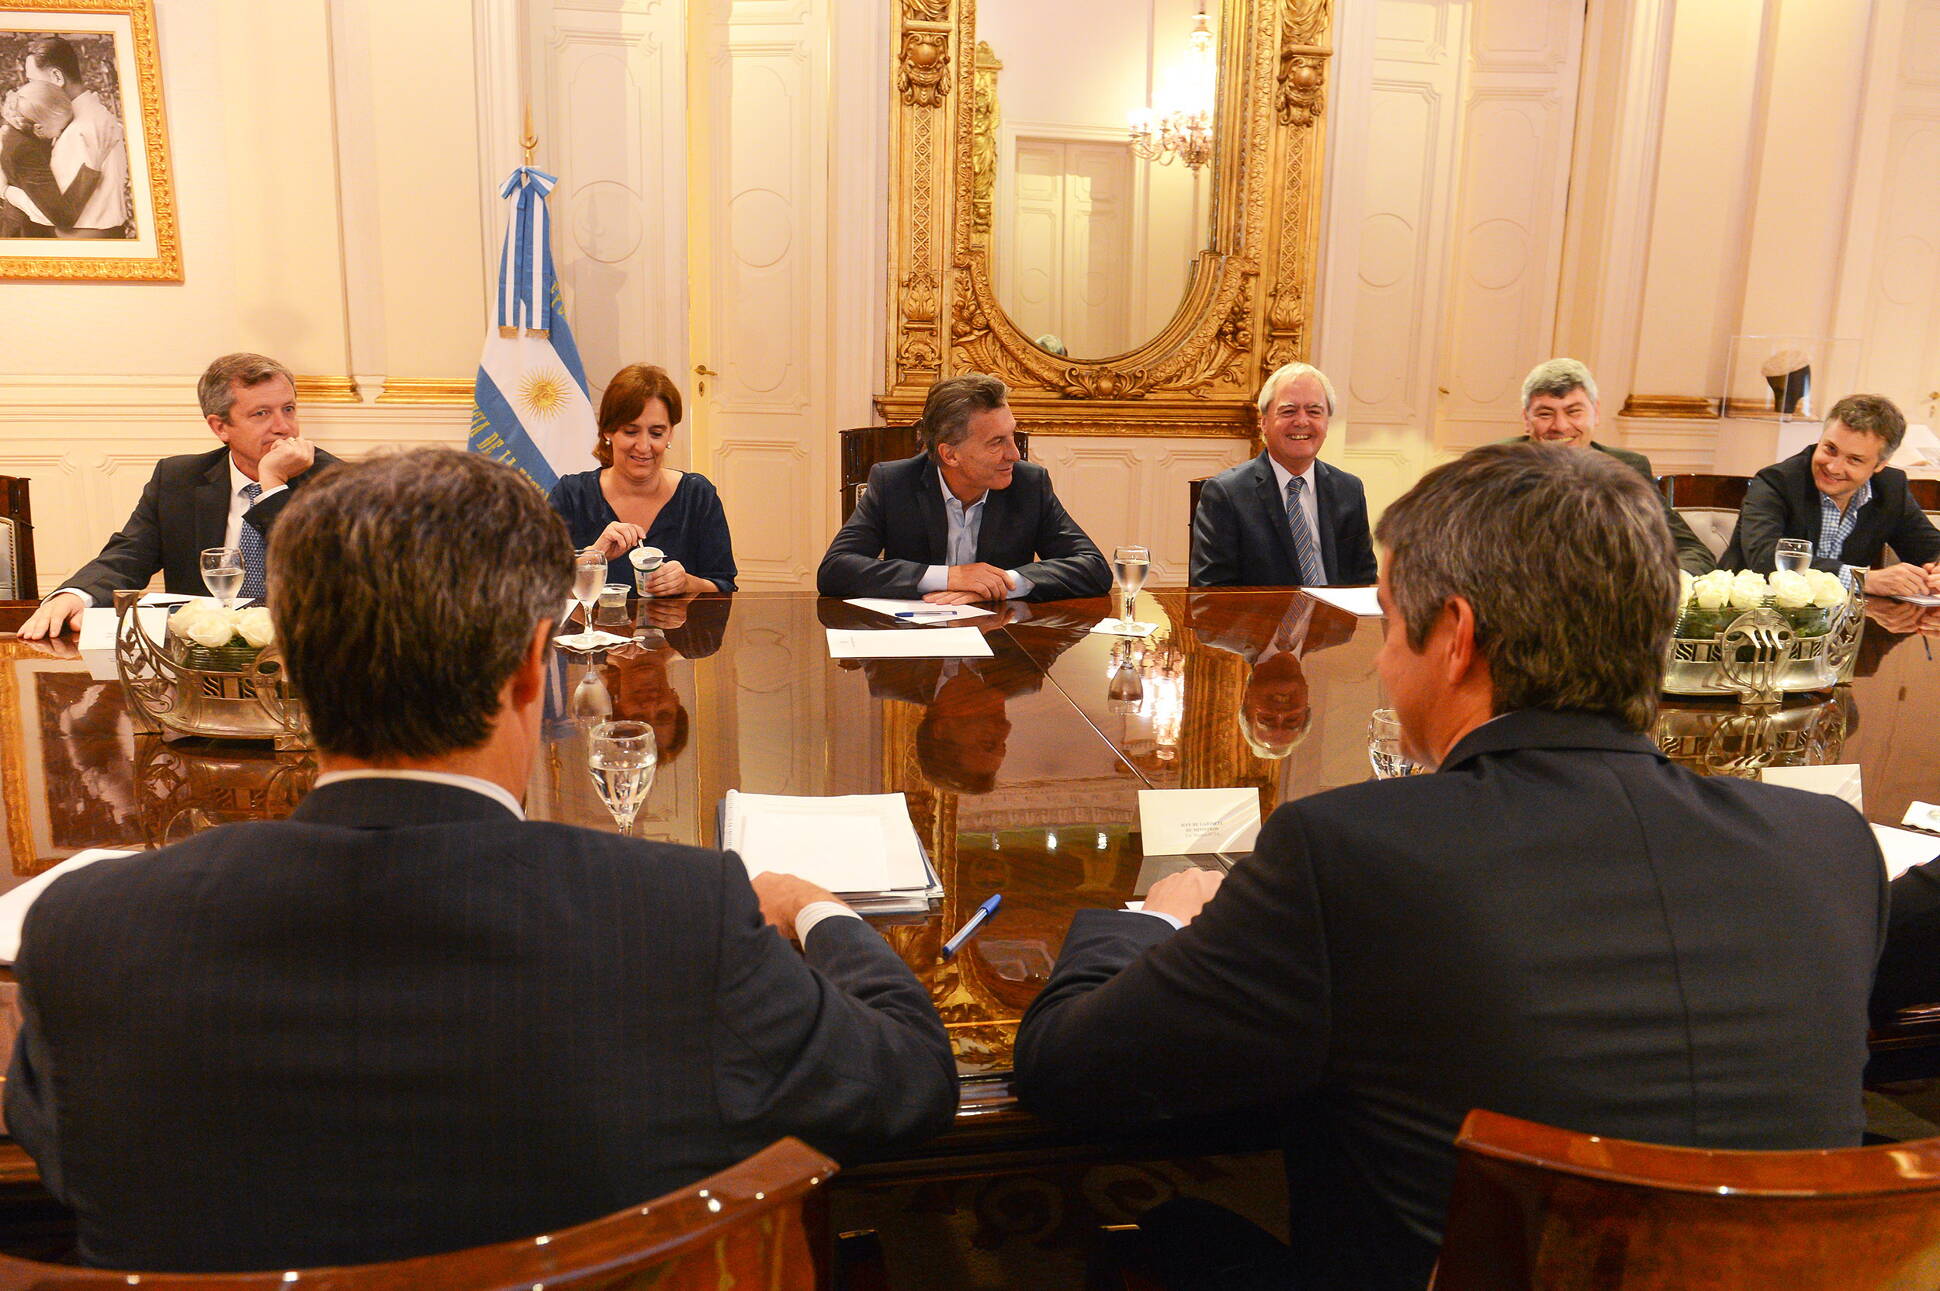 El Presidente encabezó la primera reunión de Gabinete de su Gobierno, Salón Eva Perón en Casa Rosada.